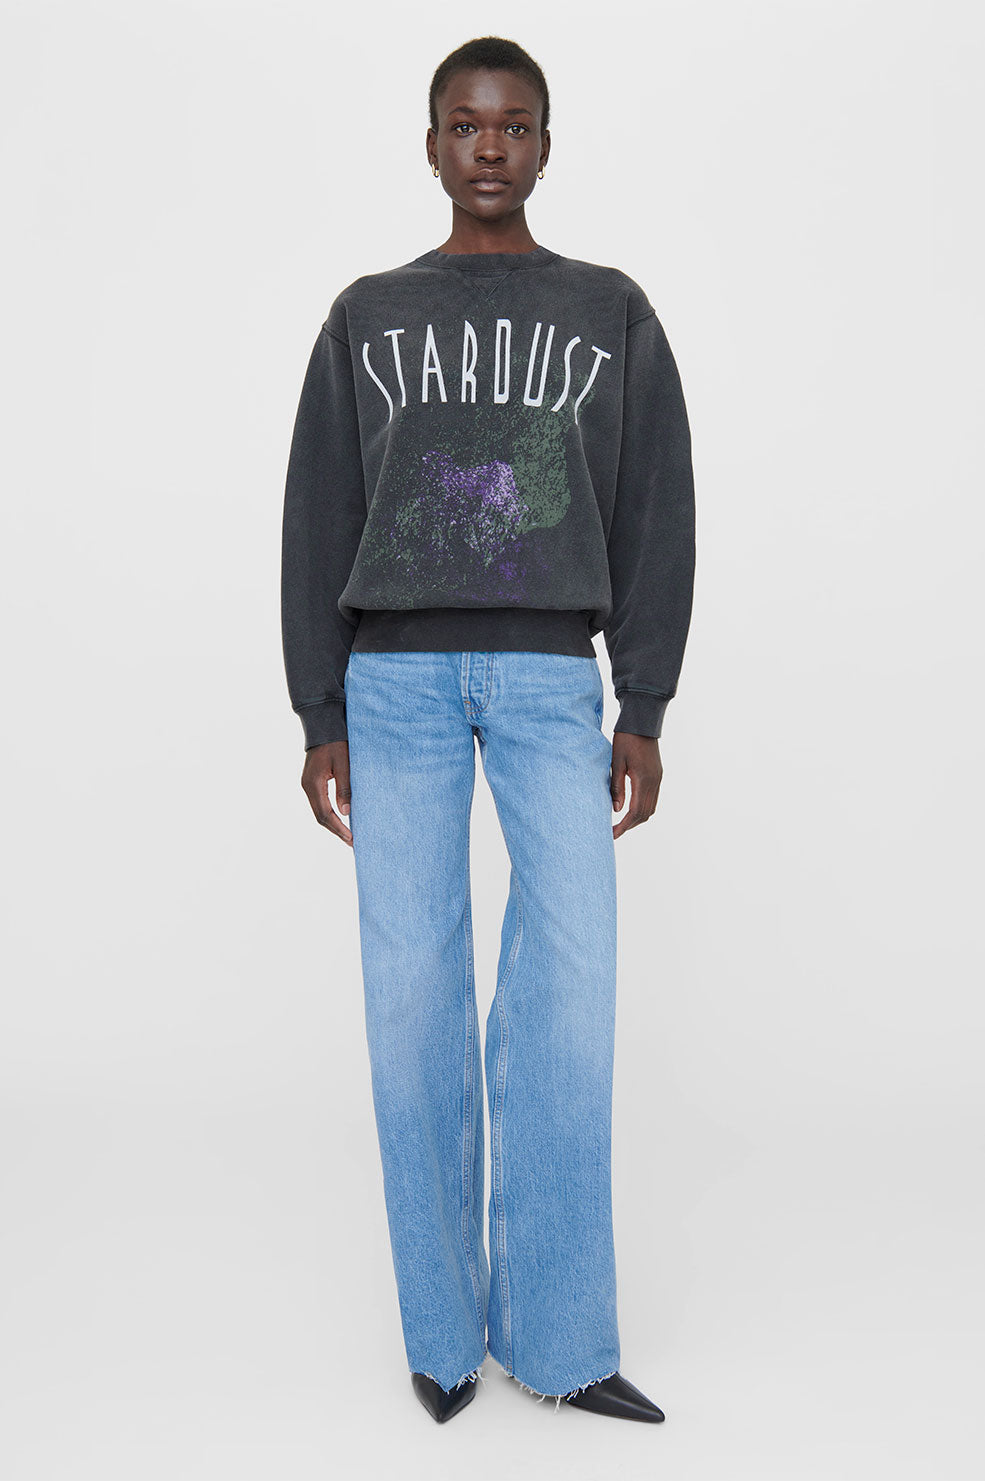 ANINE BING Ramona Sweatshirt Stardust - Washed Black - On Model Front